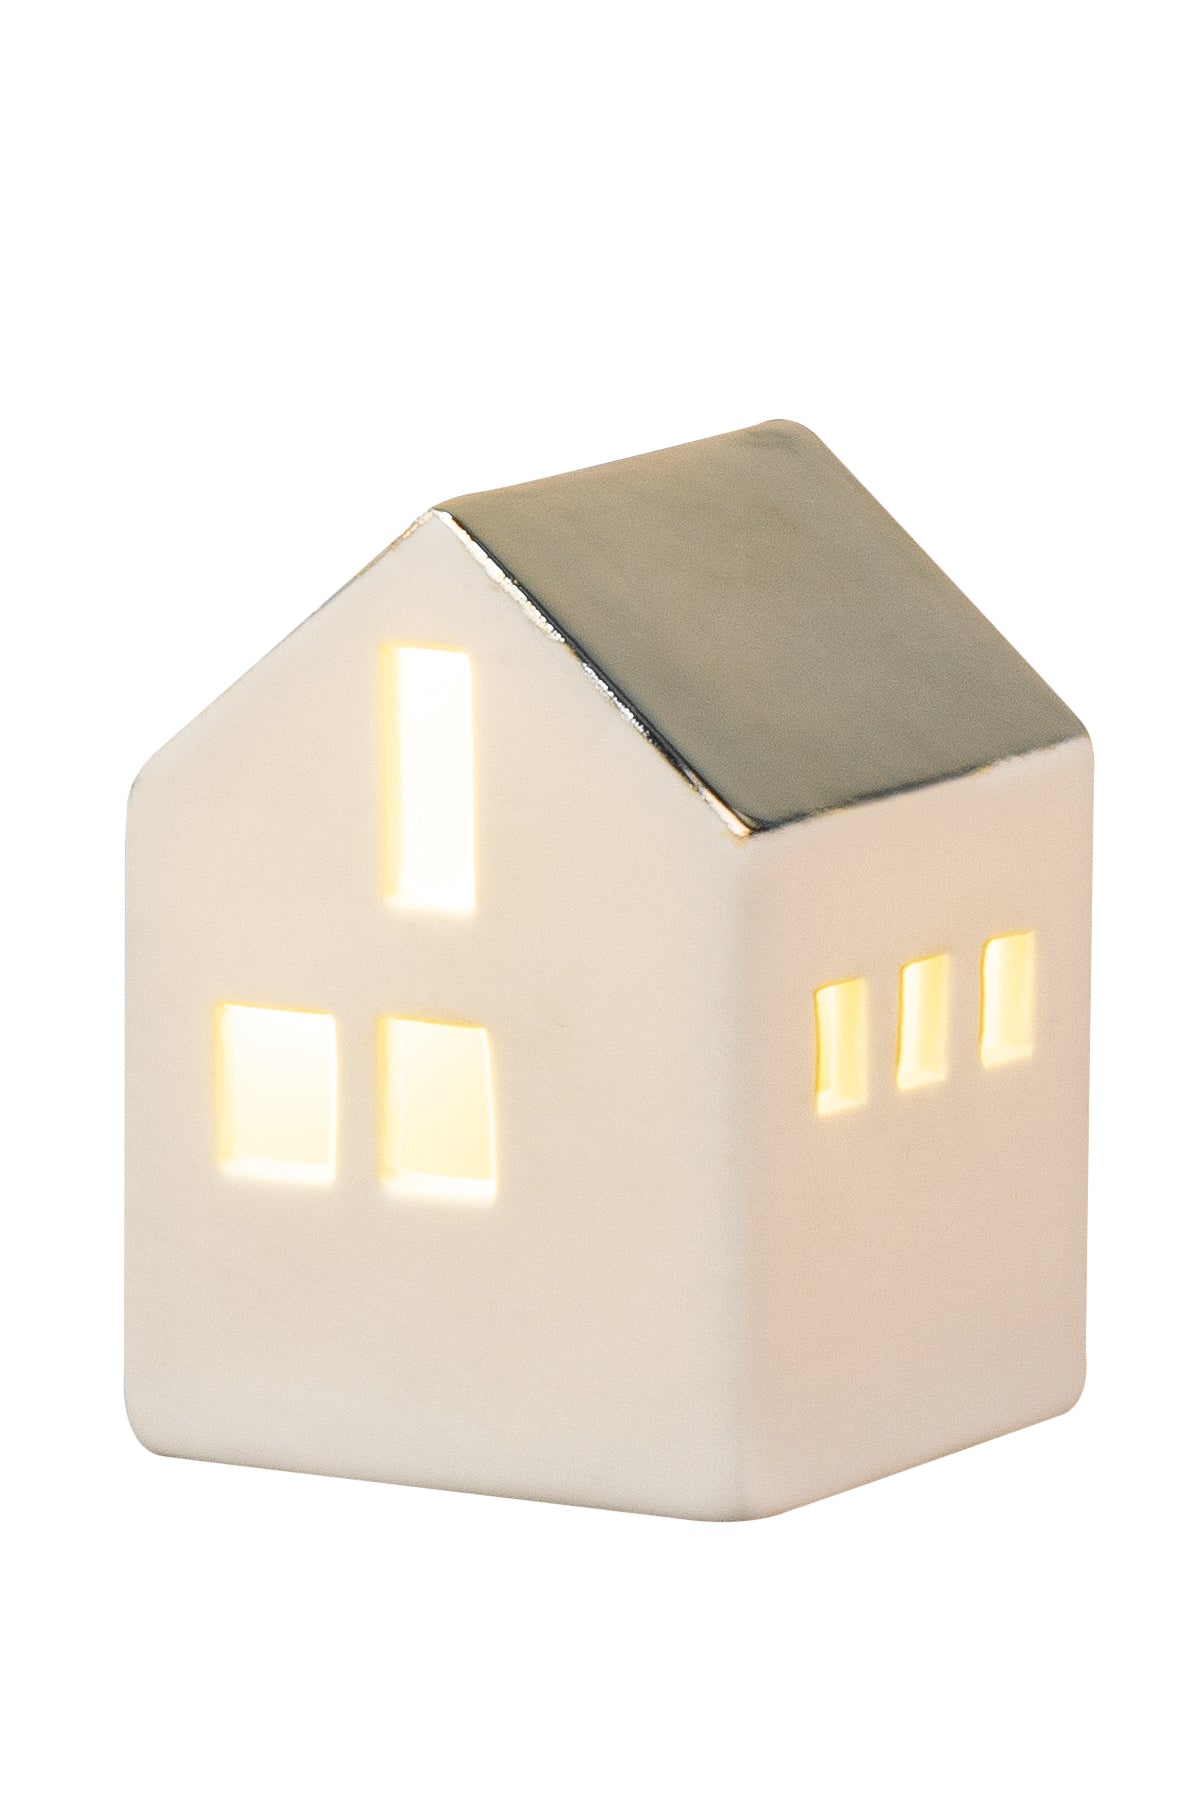 Mini light house - LED